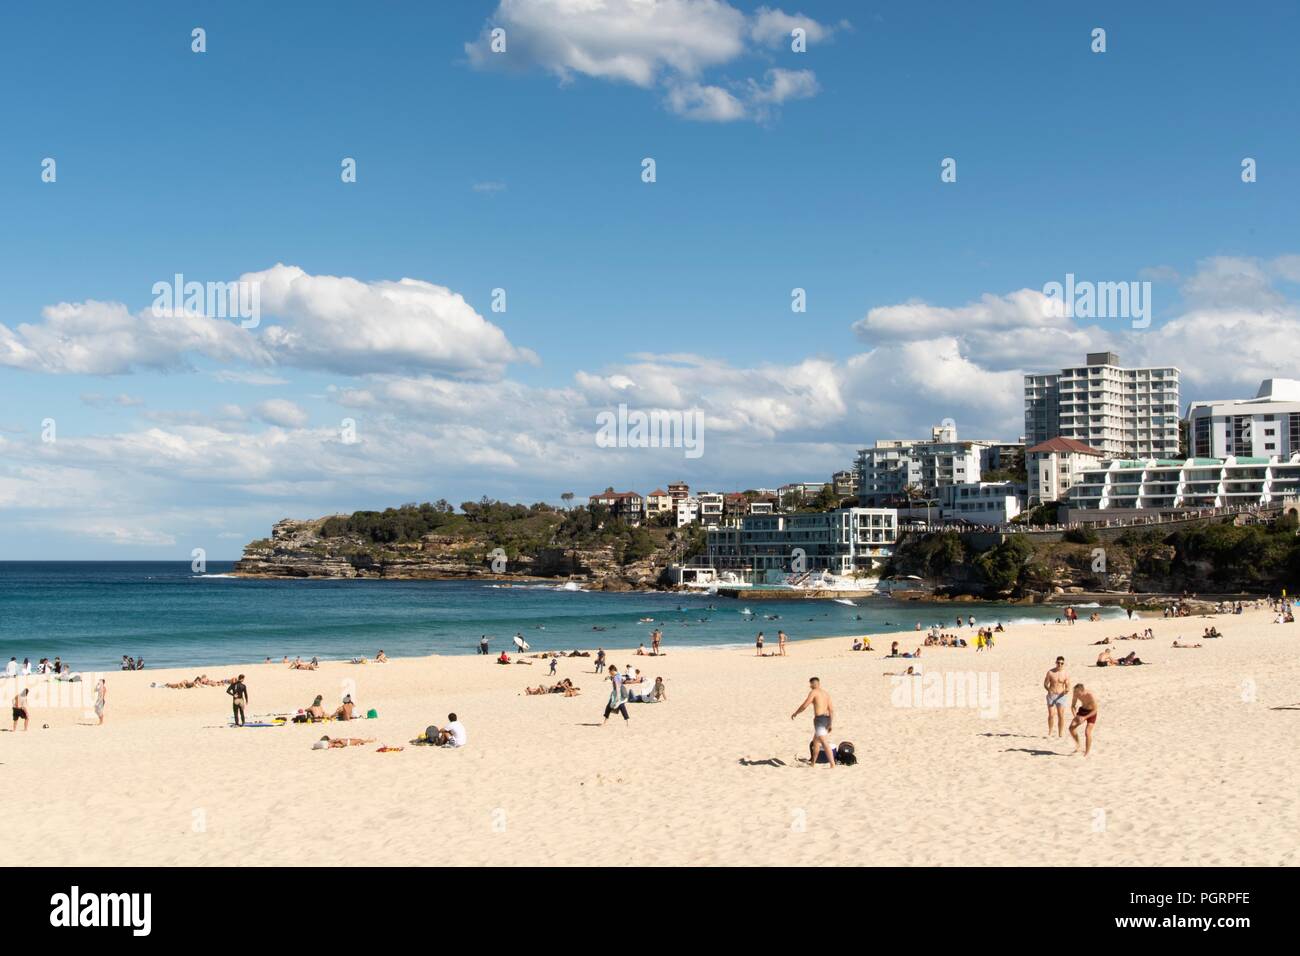 View of Bondi beach - Sydney NSW Australia Aug 2018 Stock Photo